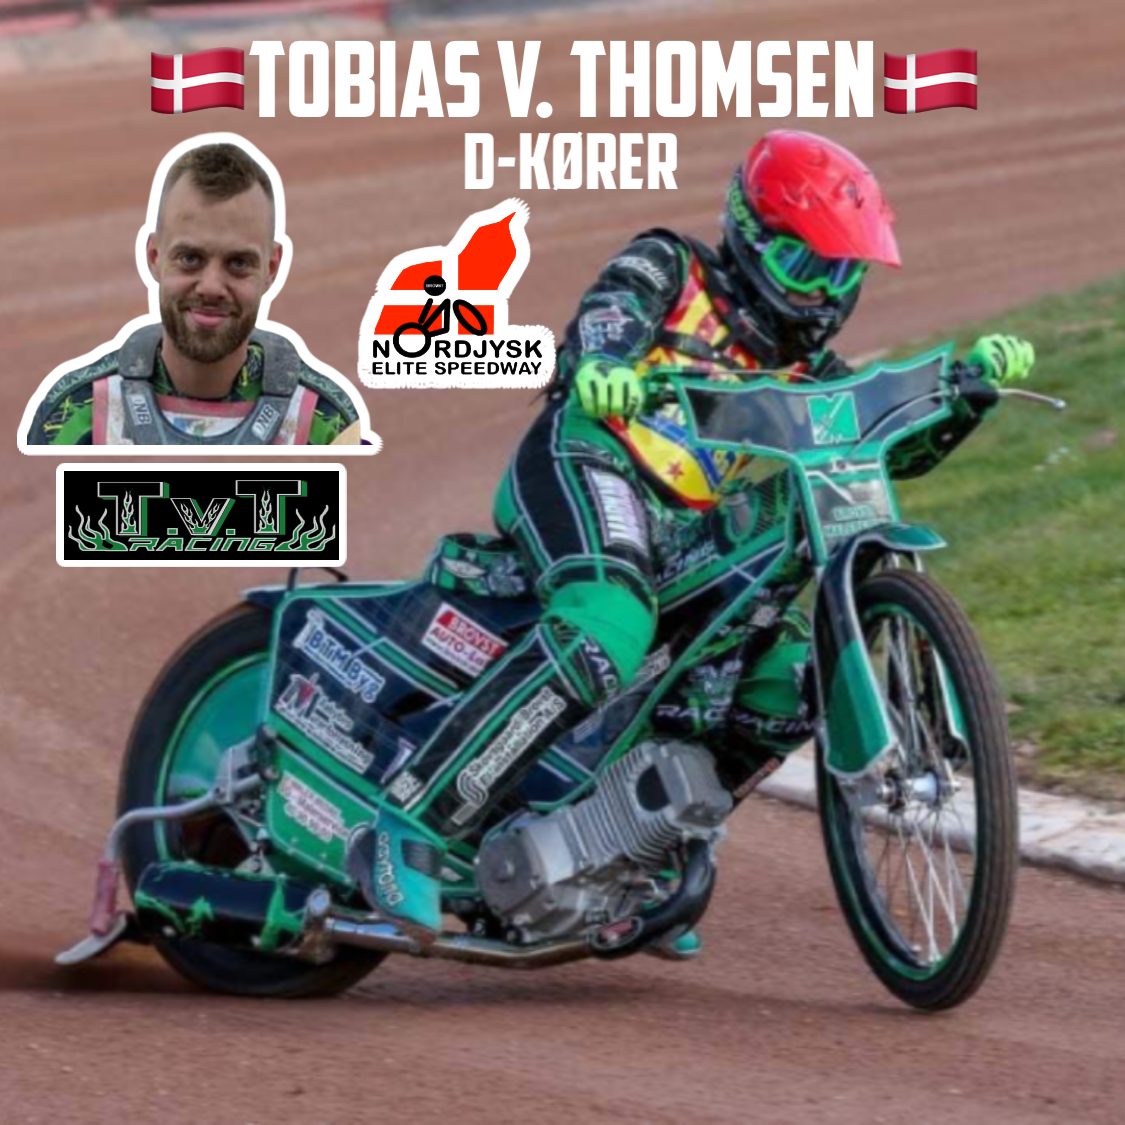 Tobias V Thomsen